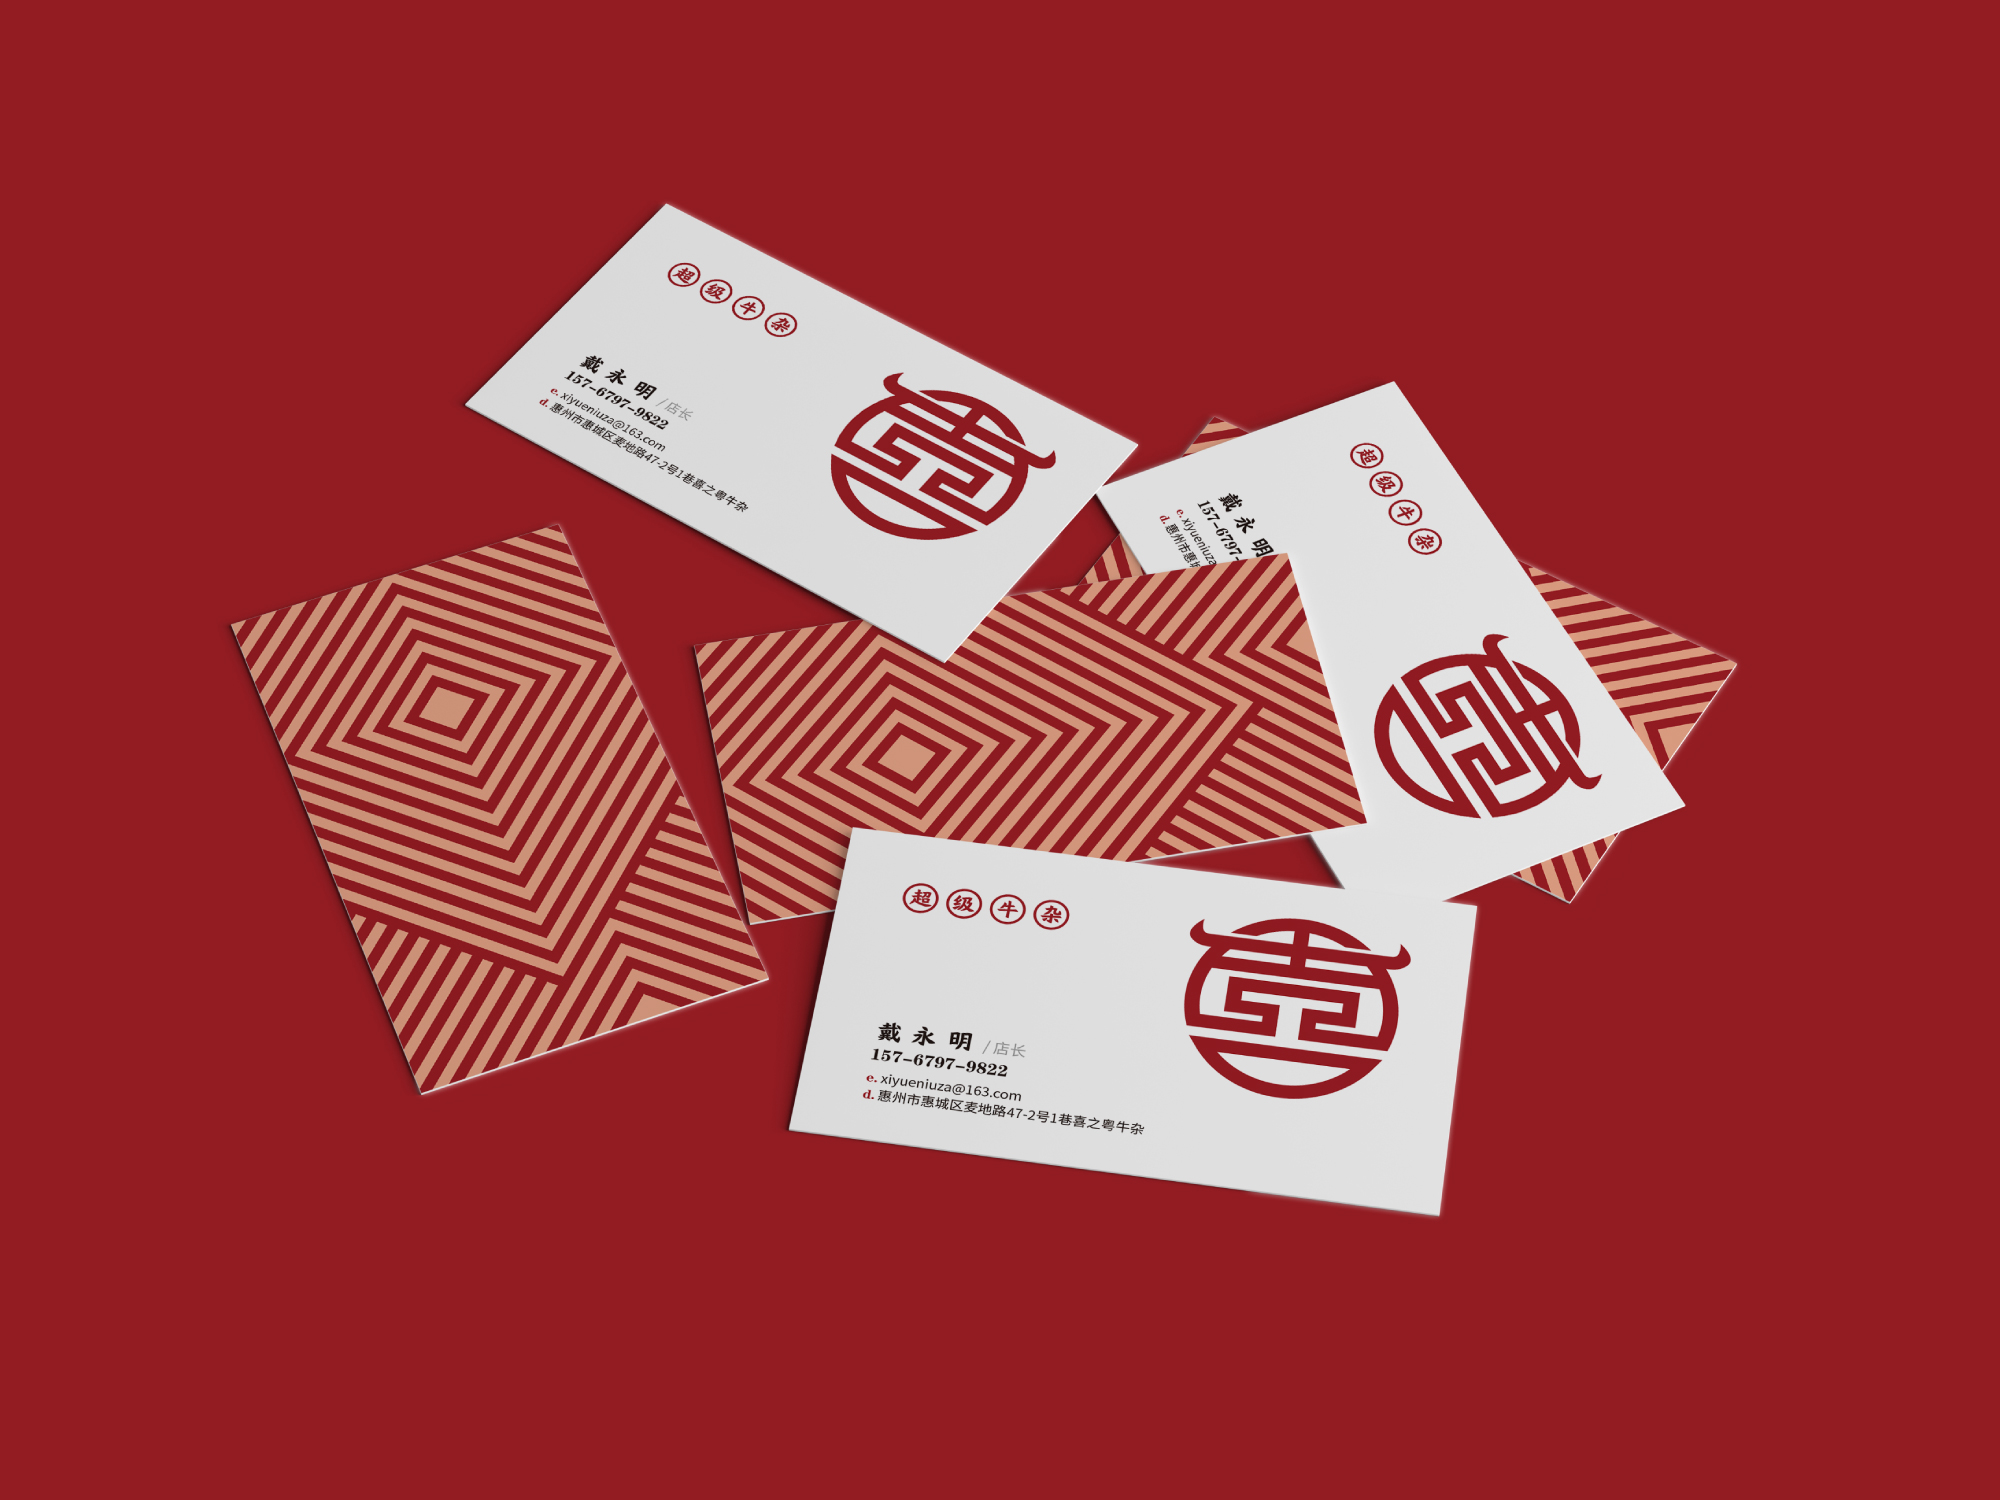 3、餐饮官网形象入口公司：国内知名的中国主题餐饮空间入口公司，有什么推荐的吗？ 